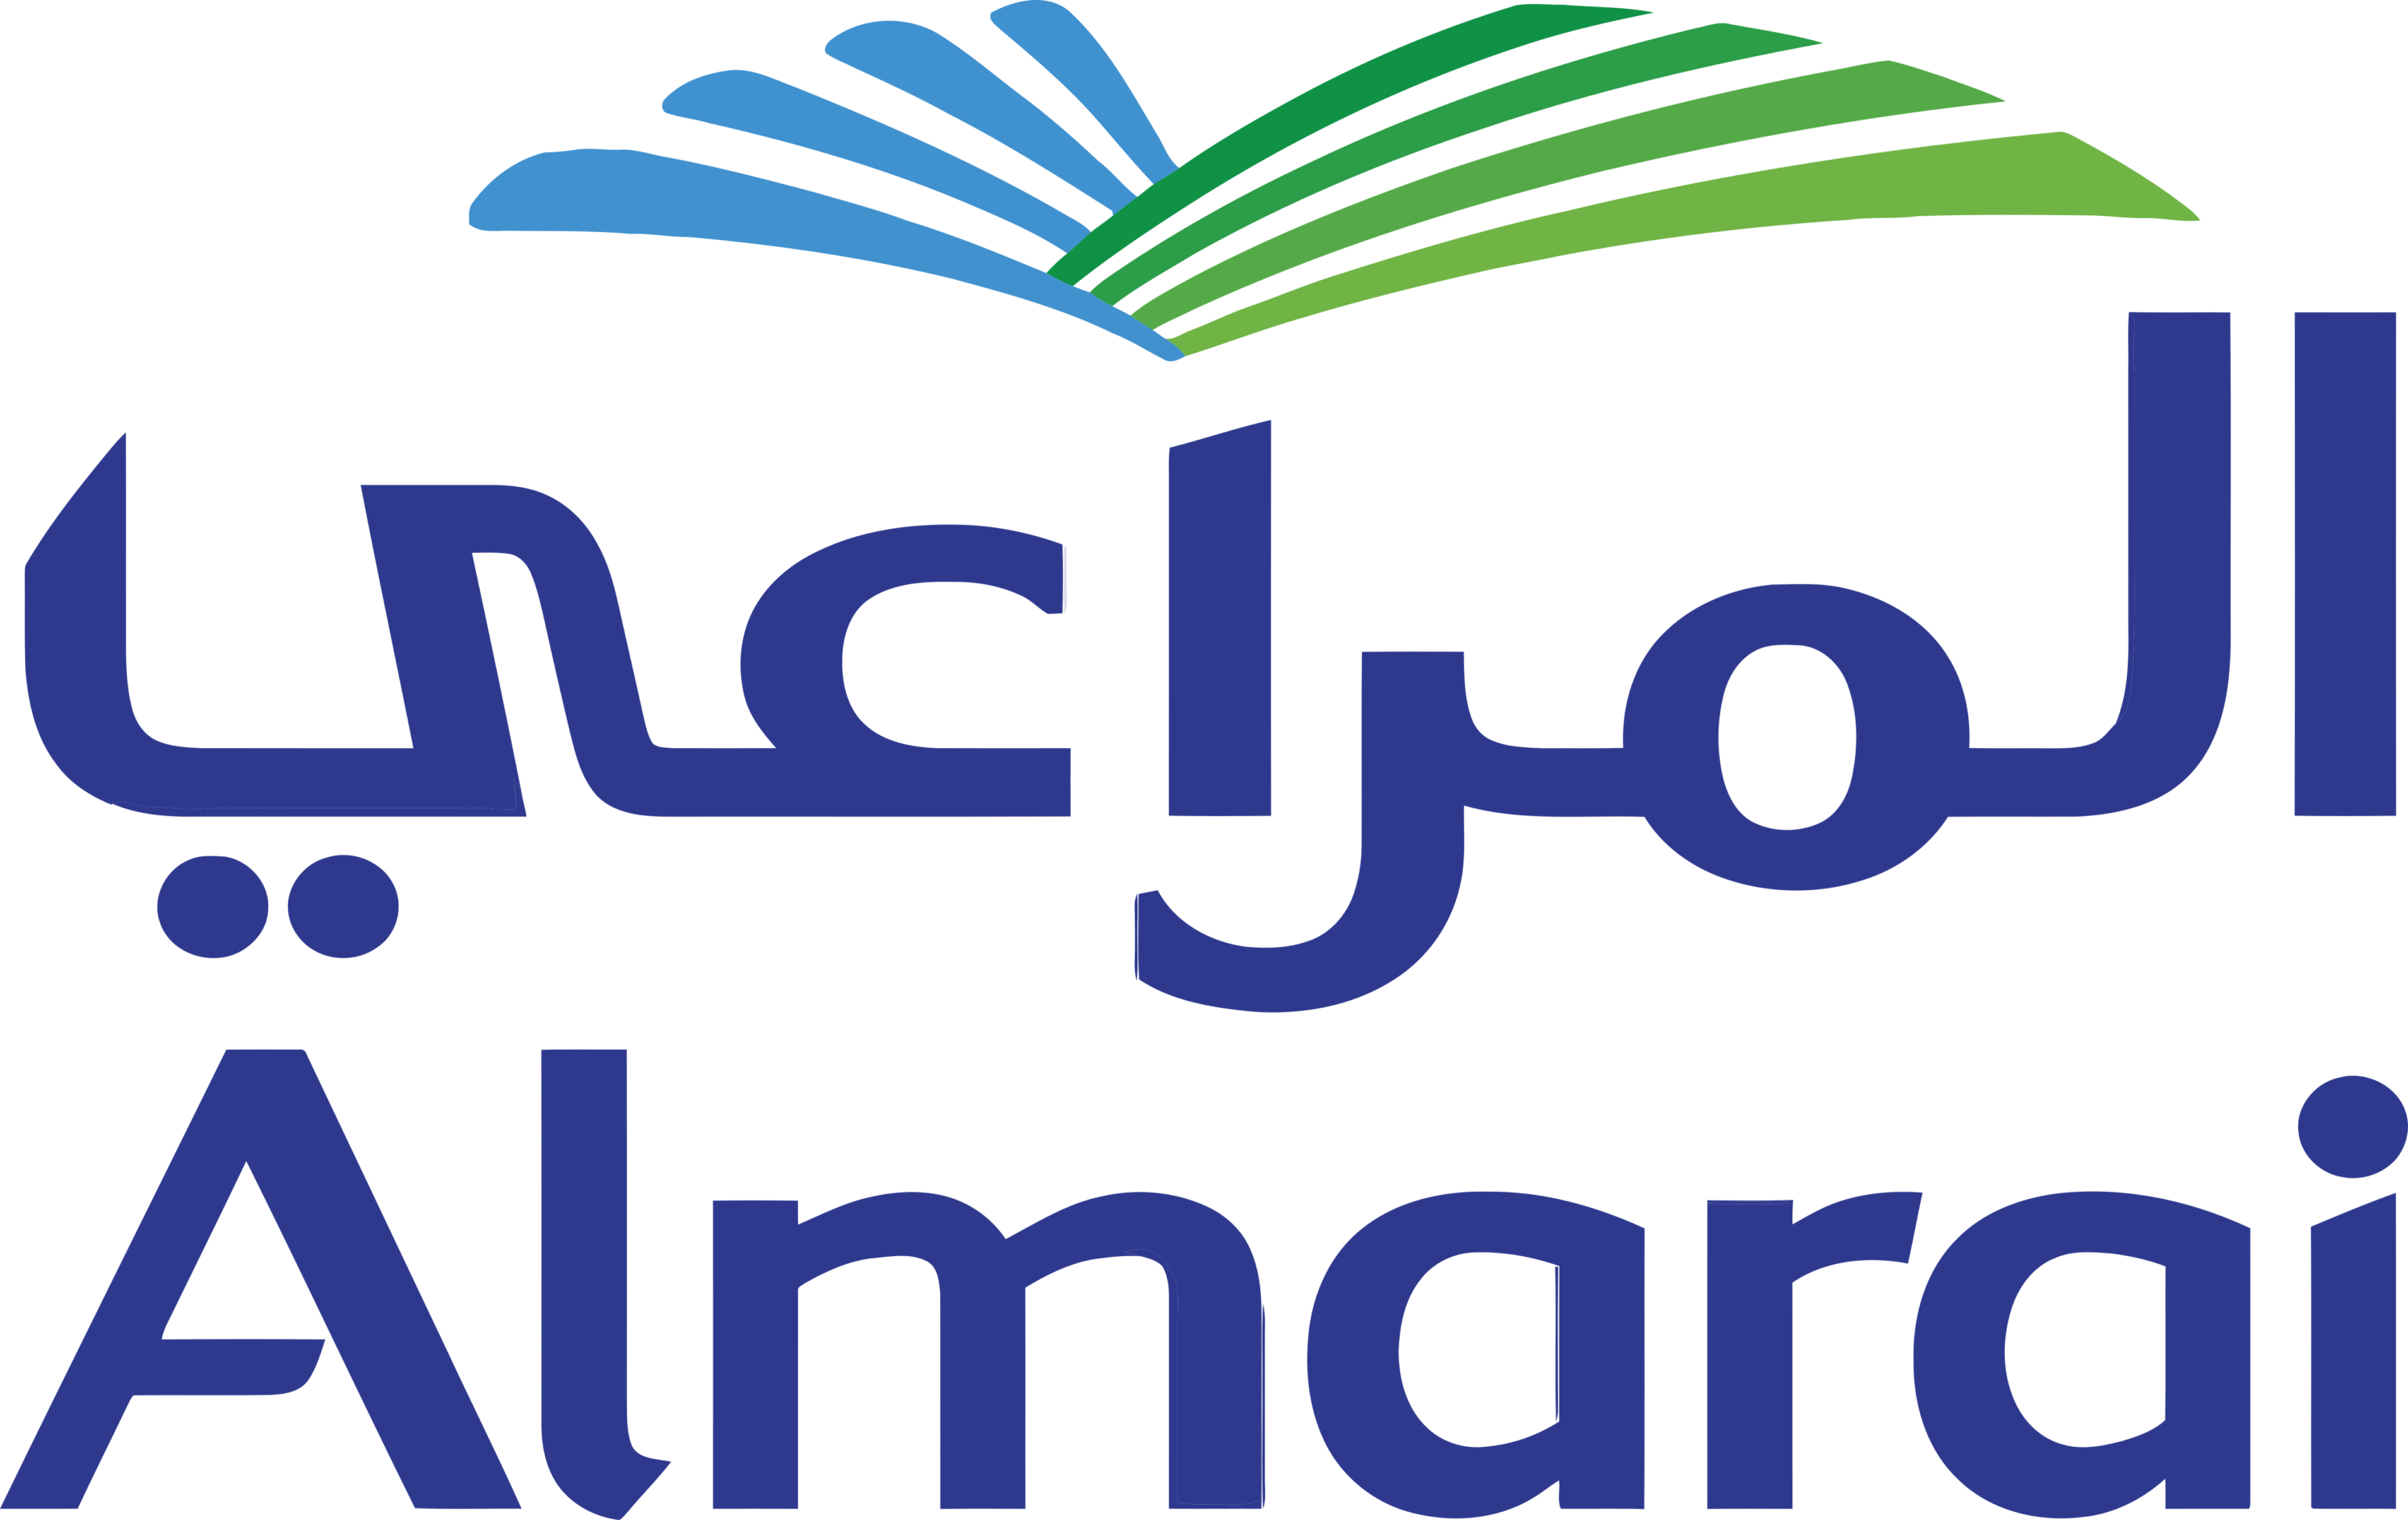 Almarai Logo